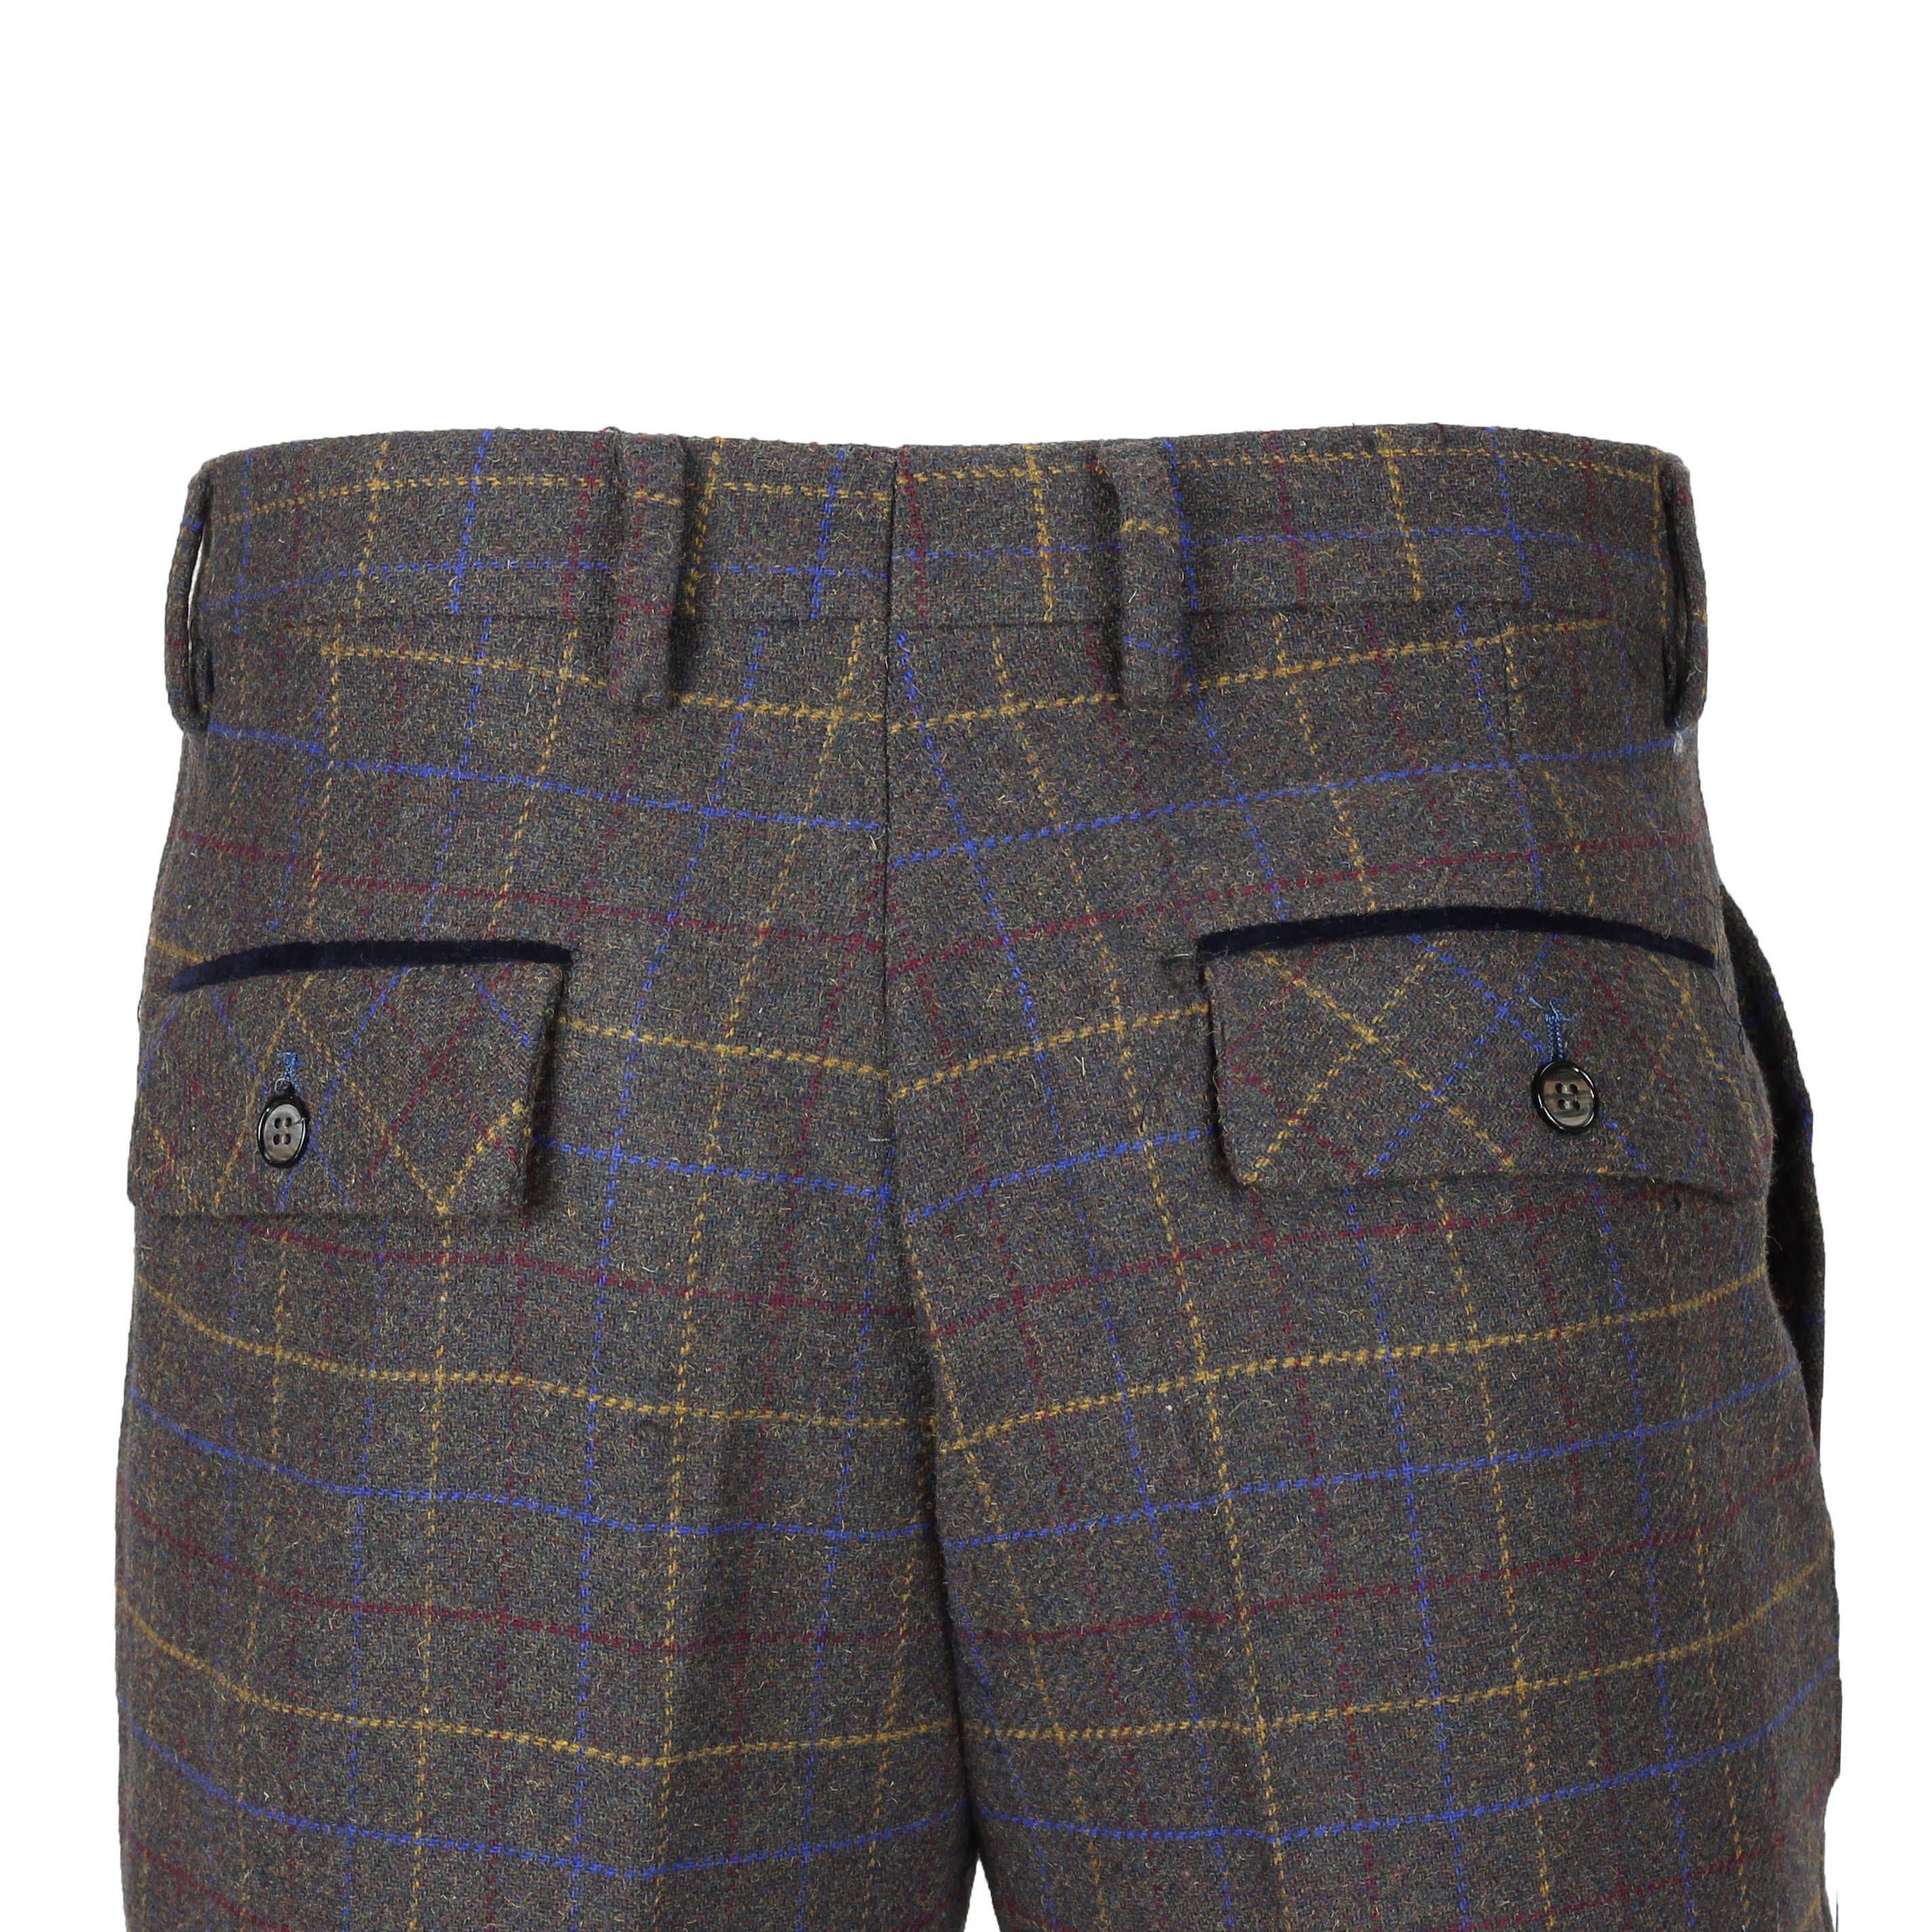 Men’s Herringbone Trousers Vintage Style Tweed Check Tailored Fit Smart ...